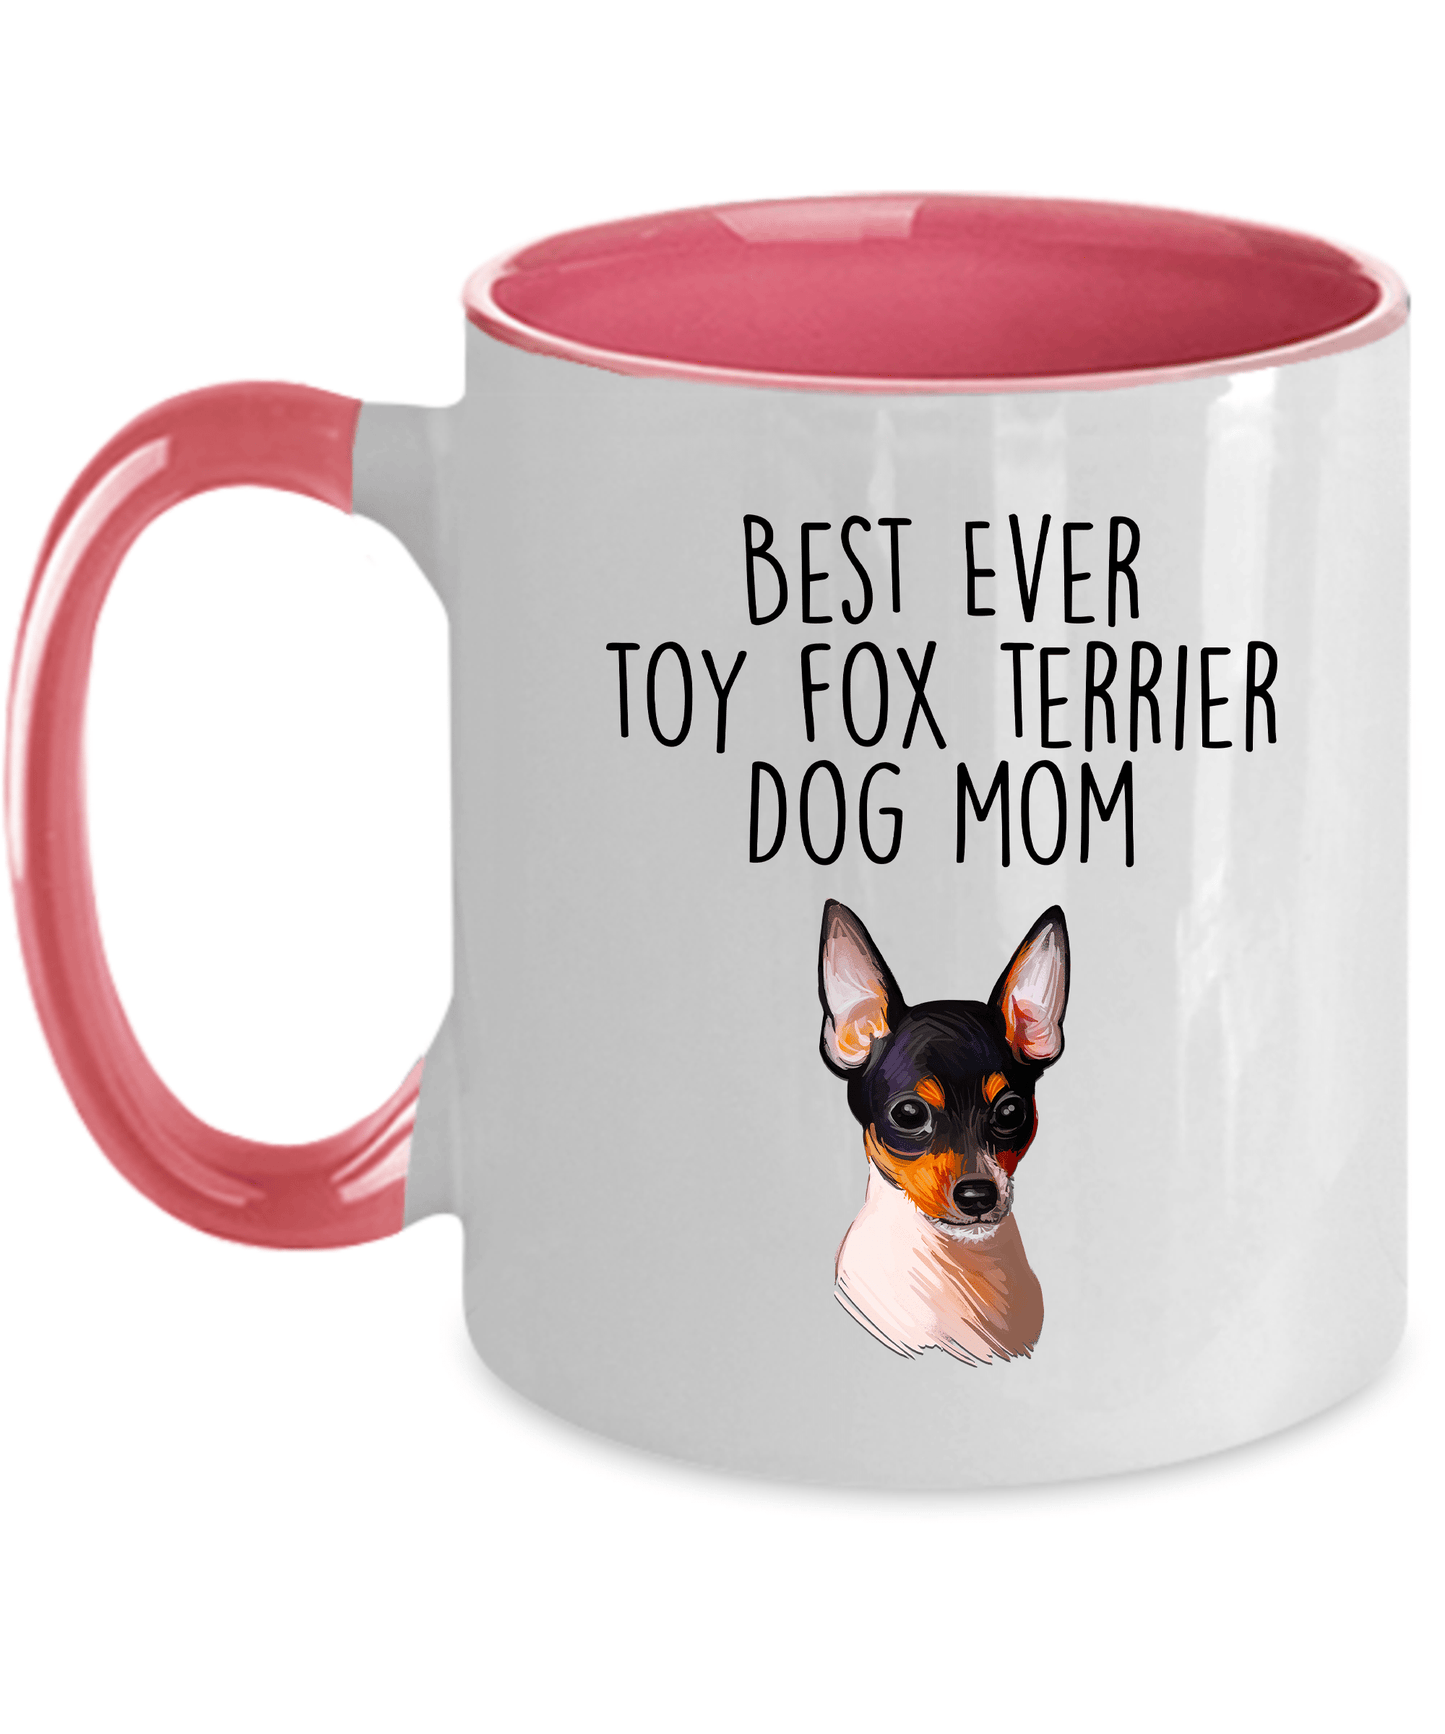 Toy Fox Terrier Dog Mom Coffee Mug